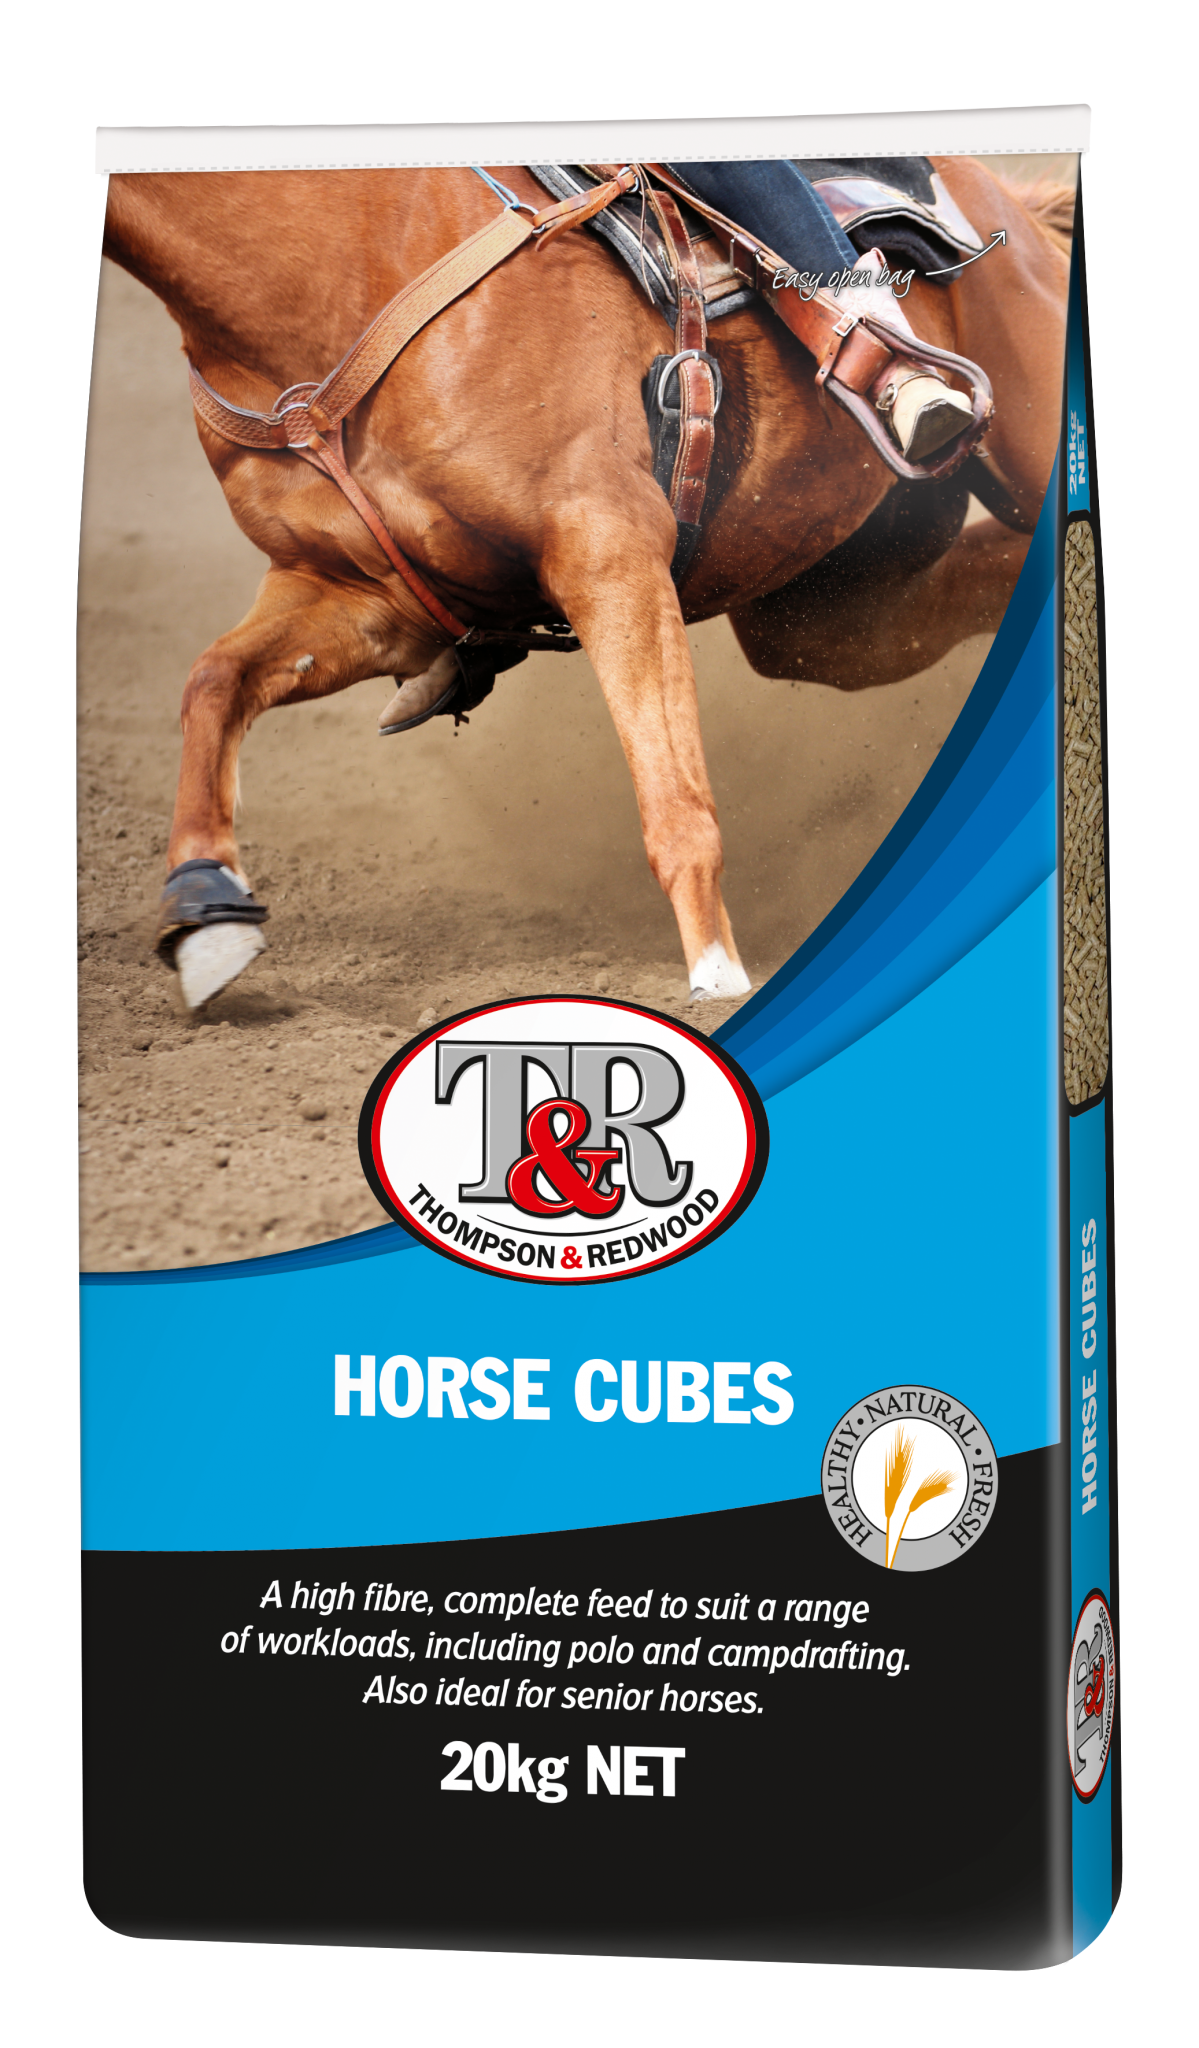 Horse Cubes Bag Image